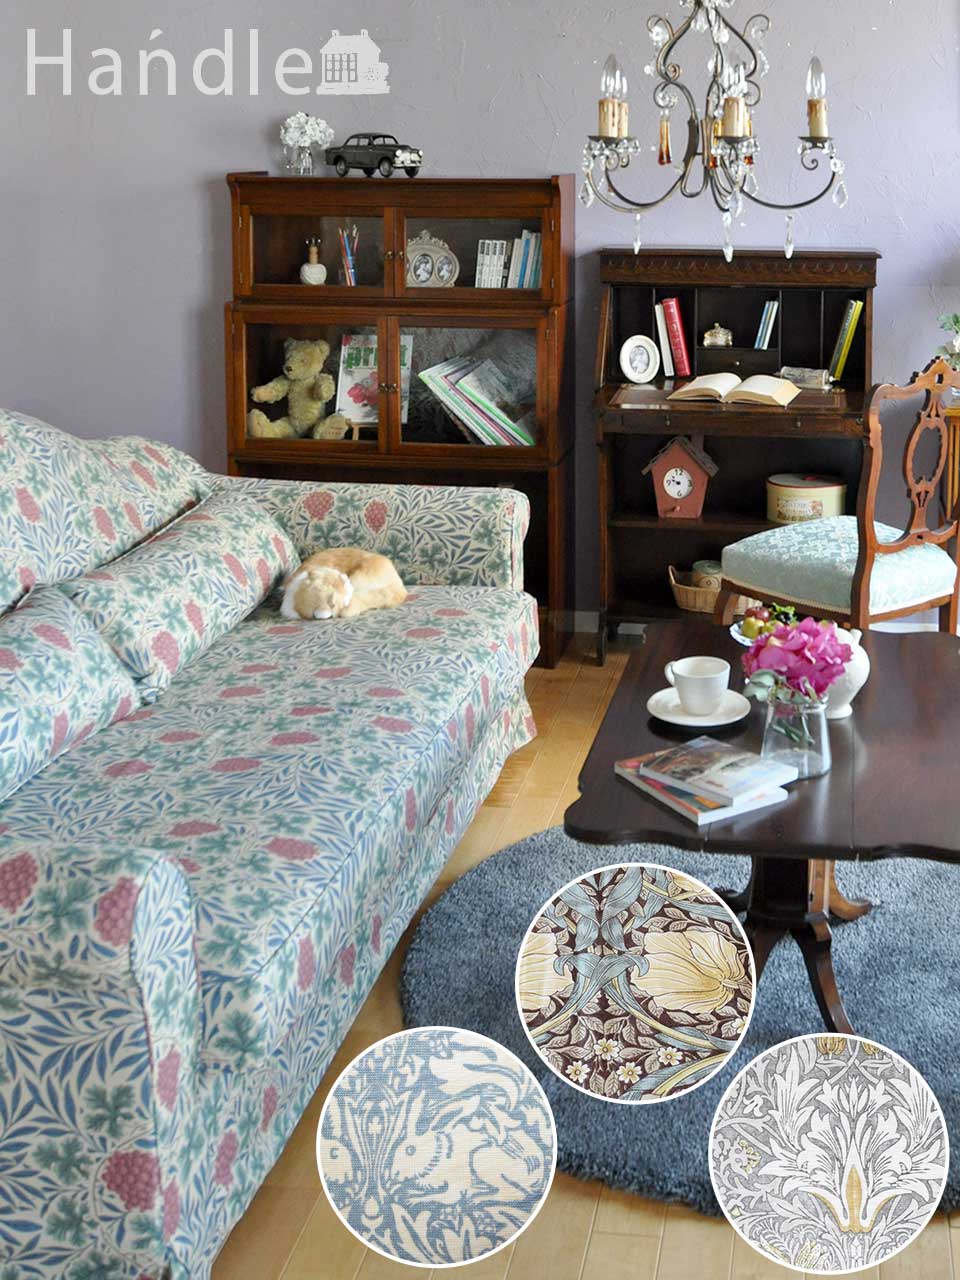 アンティーク家具に似合うソファ、ウィリアムモリスの生地が美しい 